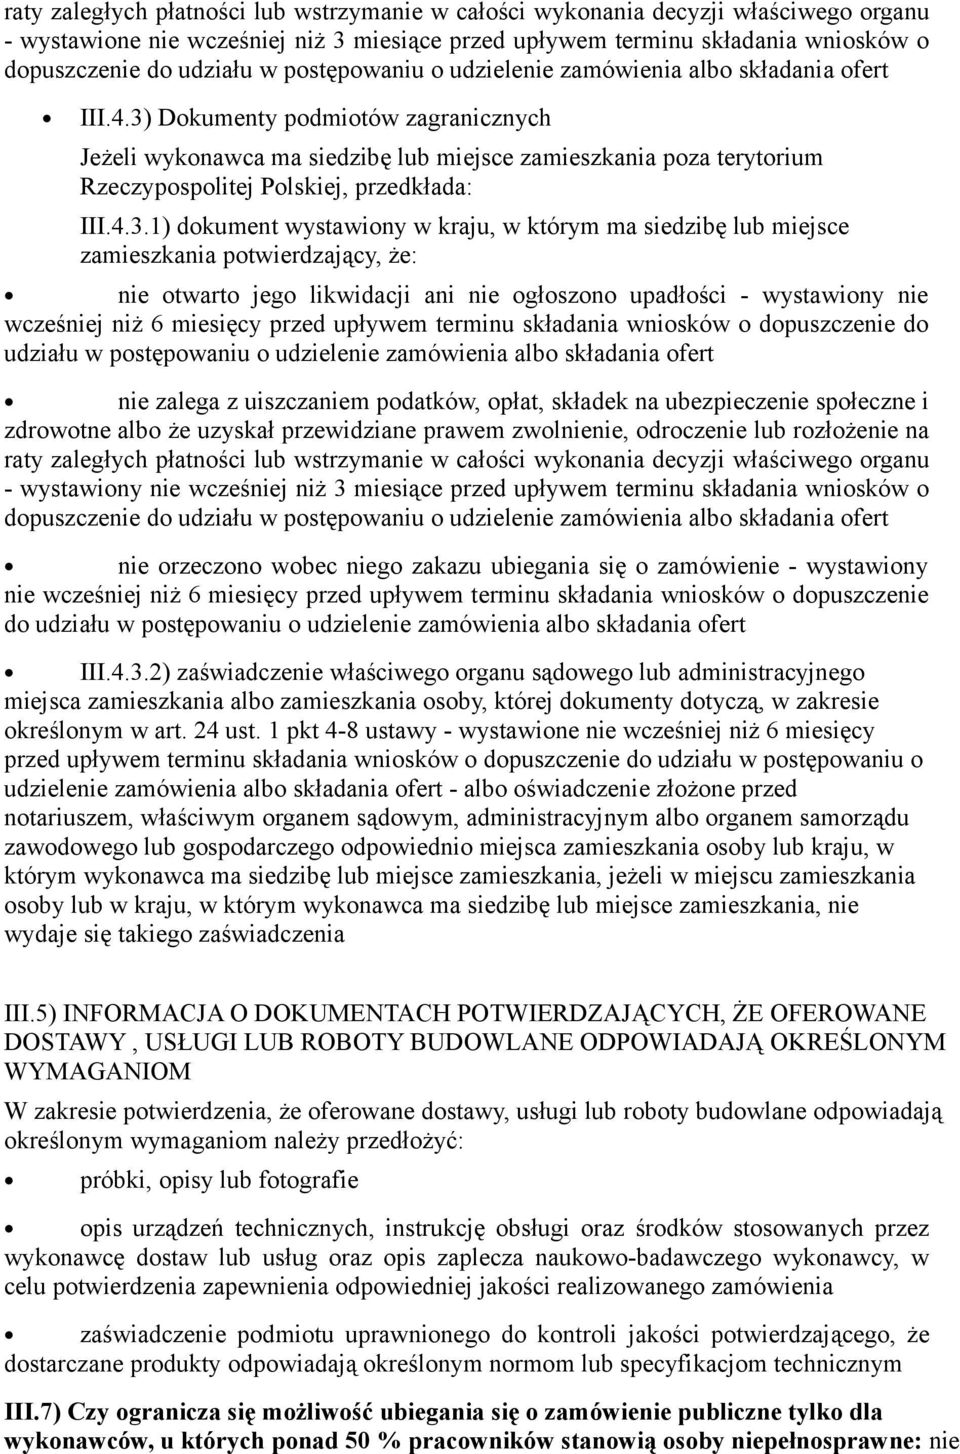 3) Dokumenty podmiotów zagranicznych Jeżeli wykonawca ma siedzibę lub miejsce zamieszkania poza terytorium Rzeczypospolitej Polskiej, przedkłada: III.4.3.1) dokument wystawiony w kraju, w którym ma